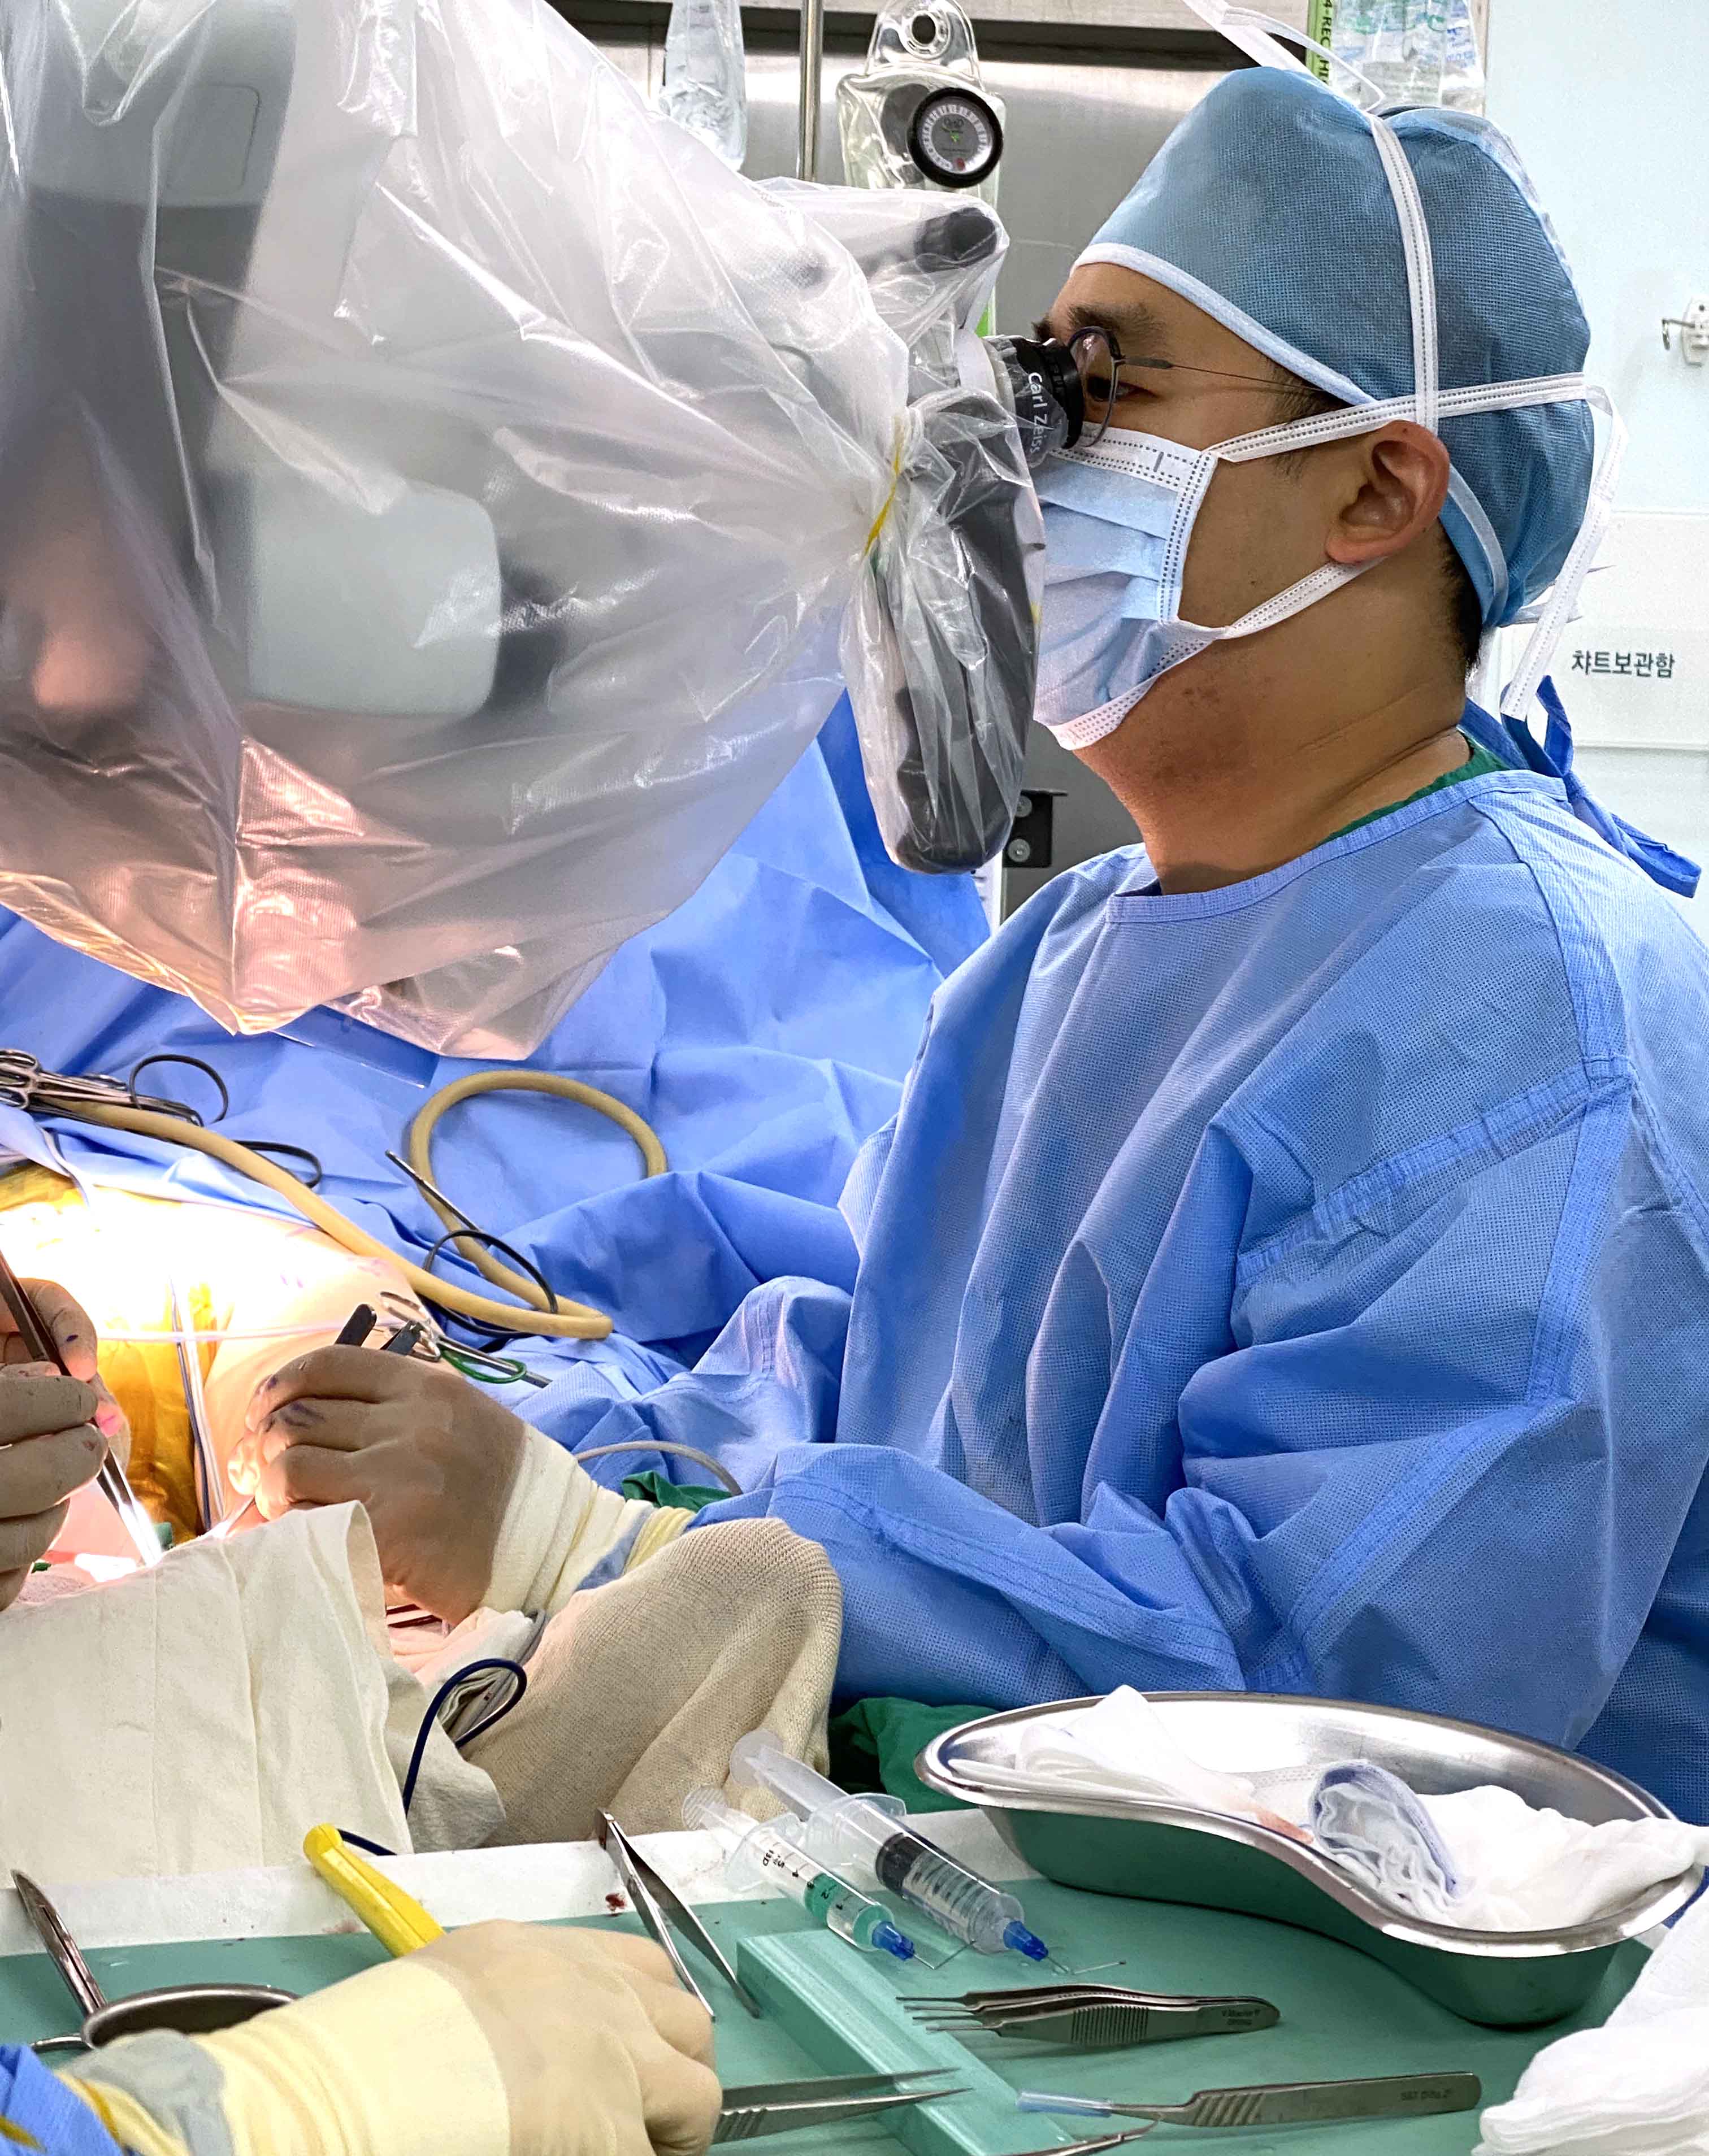 차한규 순천향대 부천병원 성형외과 교수가 ‘림프관-정맥 문합술’을 시행하고 있다. 순천향대 부천병원 제공